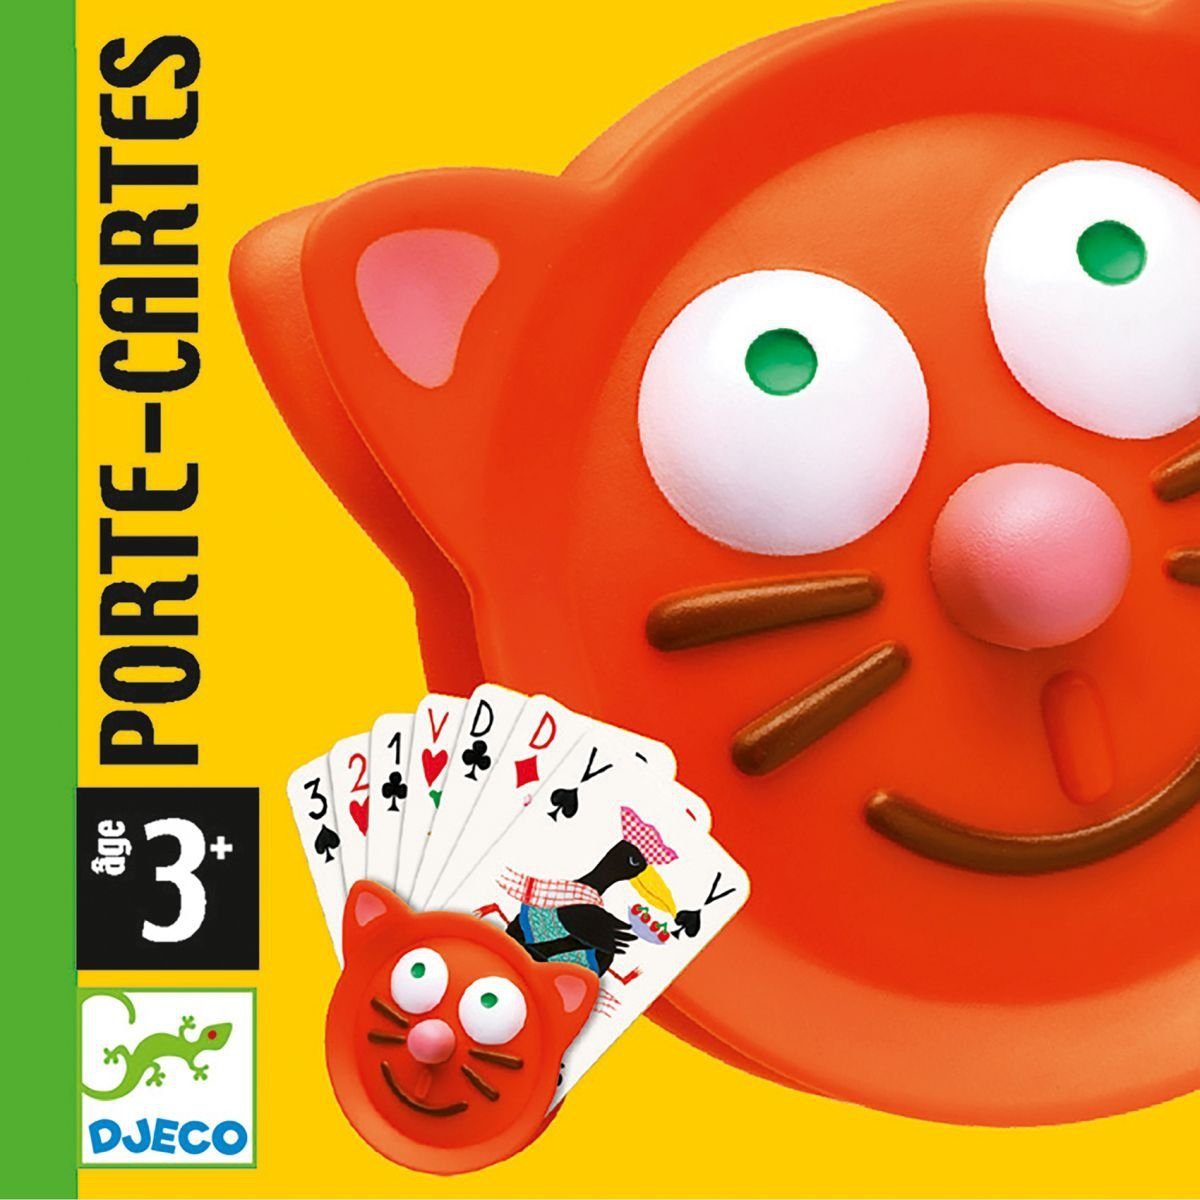 Kartenhalter Katzendesign DJECO Spiel, Spielkartenhalter Kinder